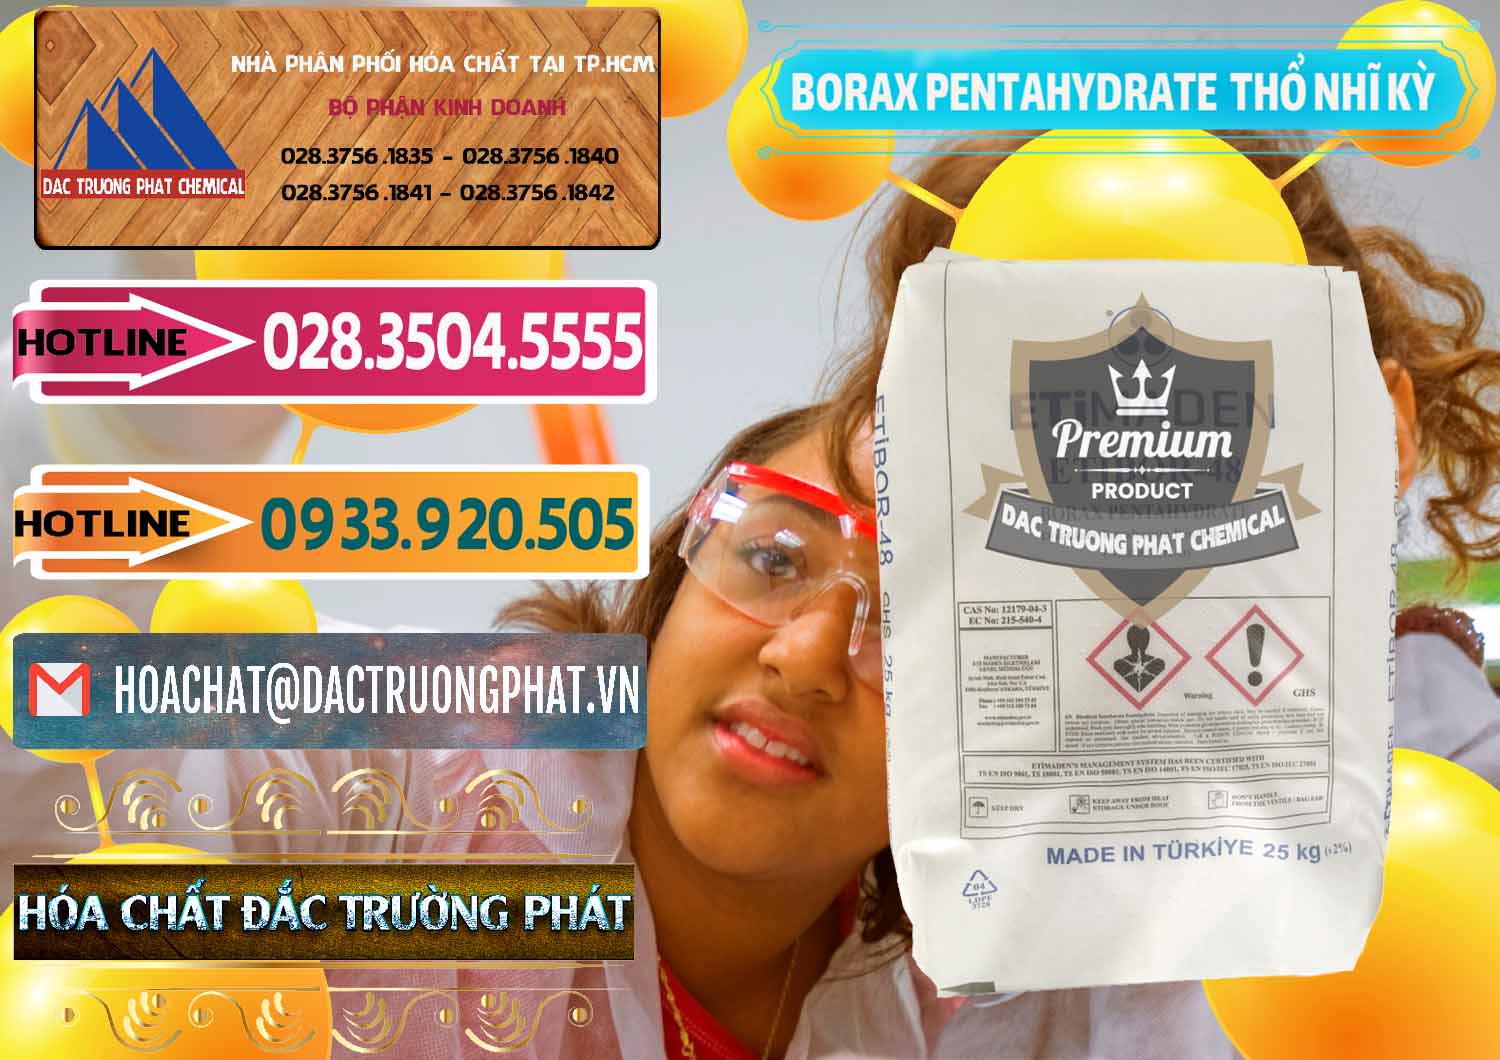 Nơi chuyên cung cấp & bán Borax Pentahydrate Thổ Nhĩ Kỳ Turkey - 0431 - Bán _ phân phối hóa chất tại TP.HCM - dactruongphat.vn